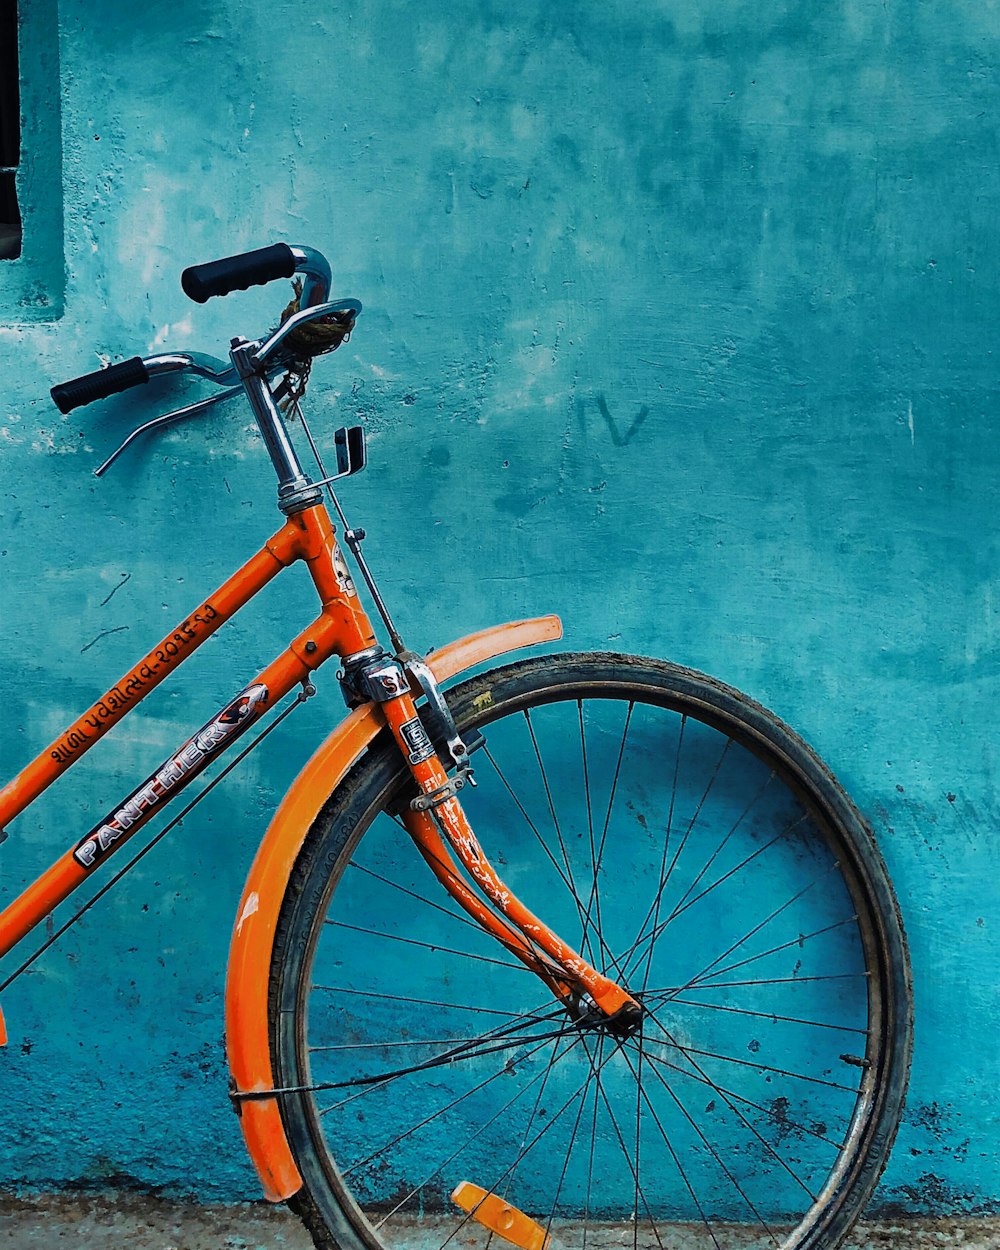 Bicicleta naranja y negra apoyada en la pared pintada de azul